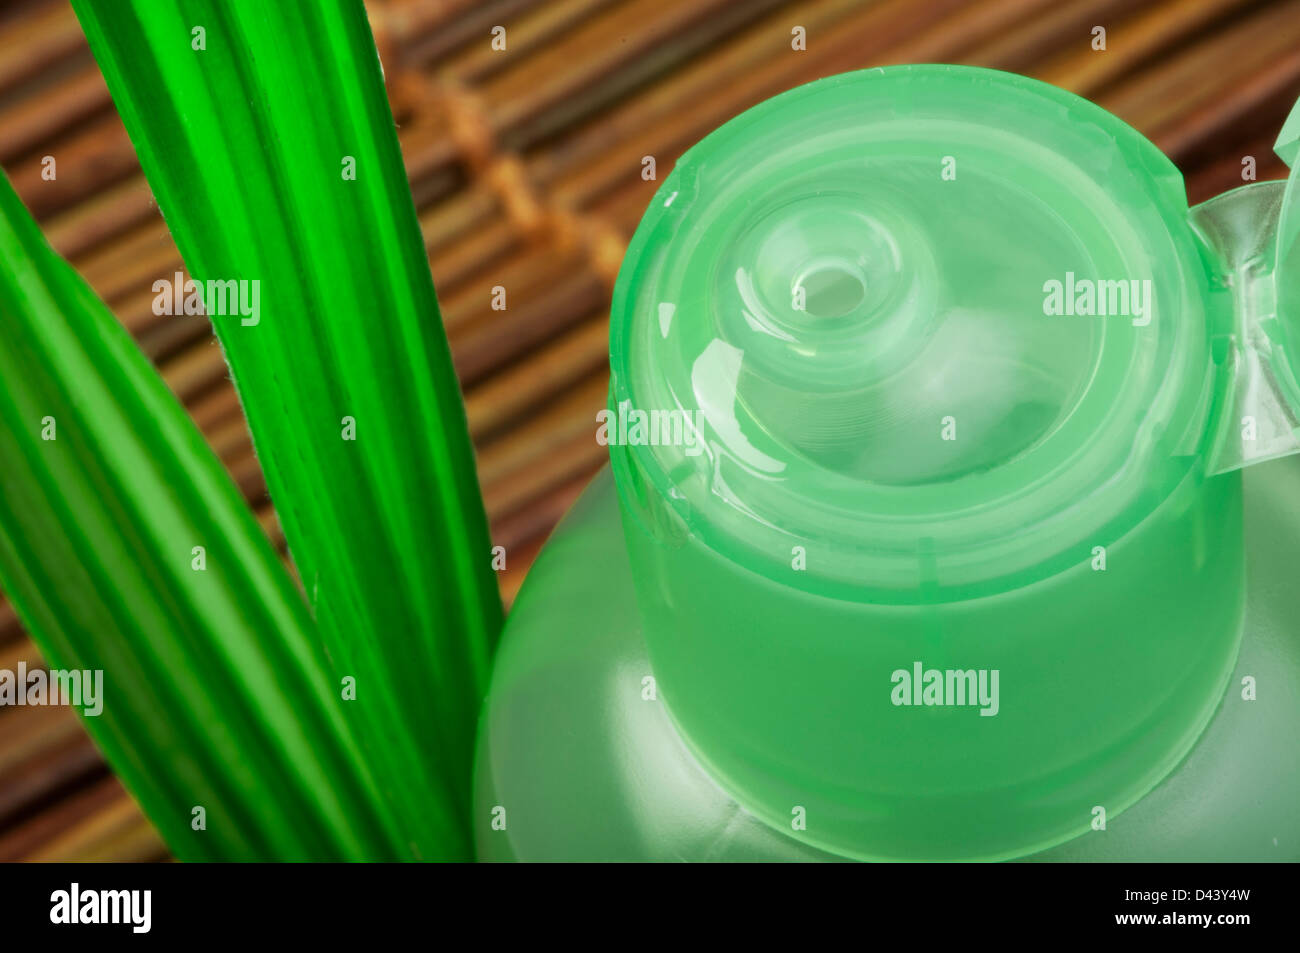 Cosmétique vert bouteille et vert feuille. Studio shot Banque D'Images